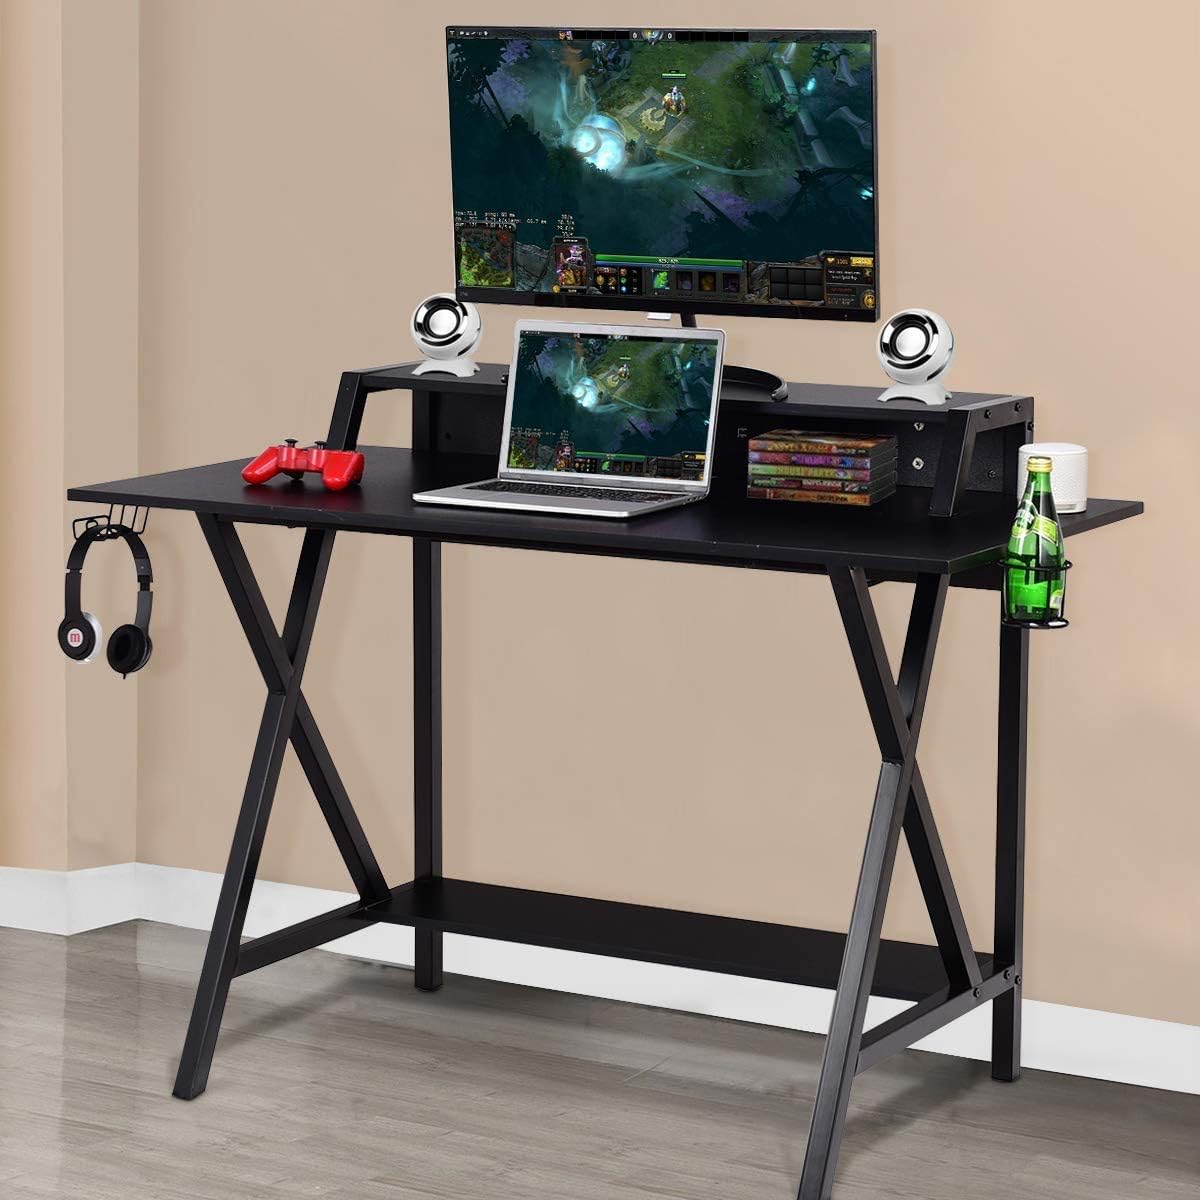 Escritorio mesa gamer gaming desk gamer desk con porta vasos y soporte  altavoz